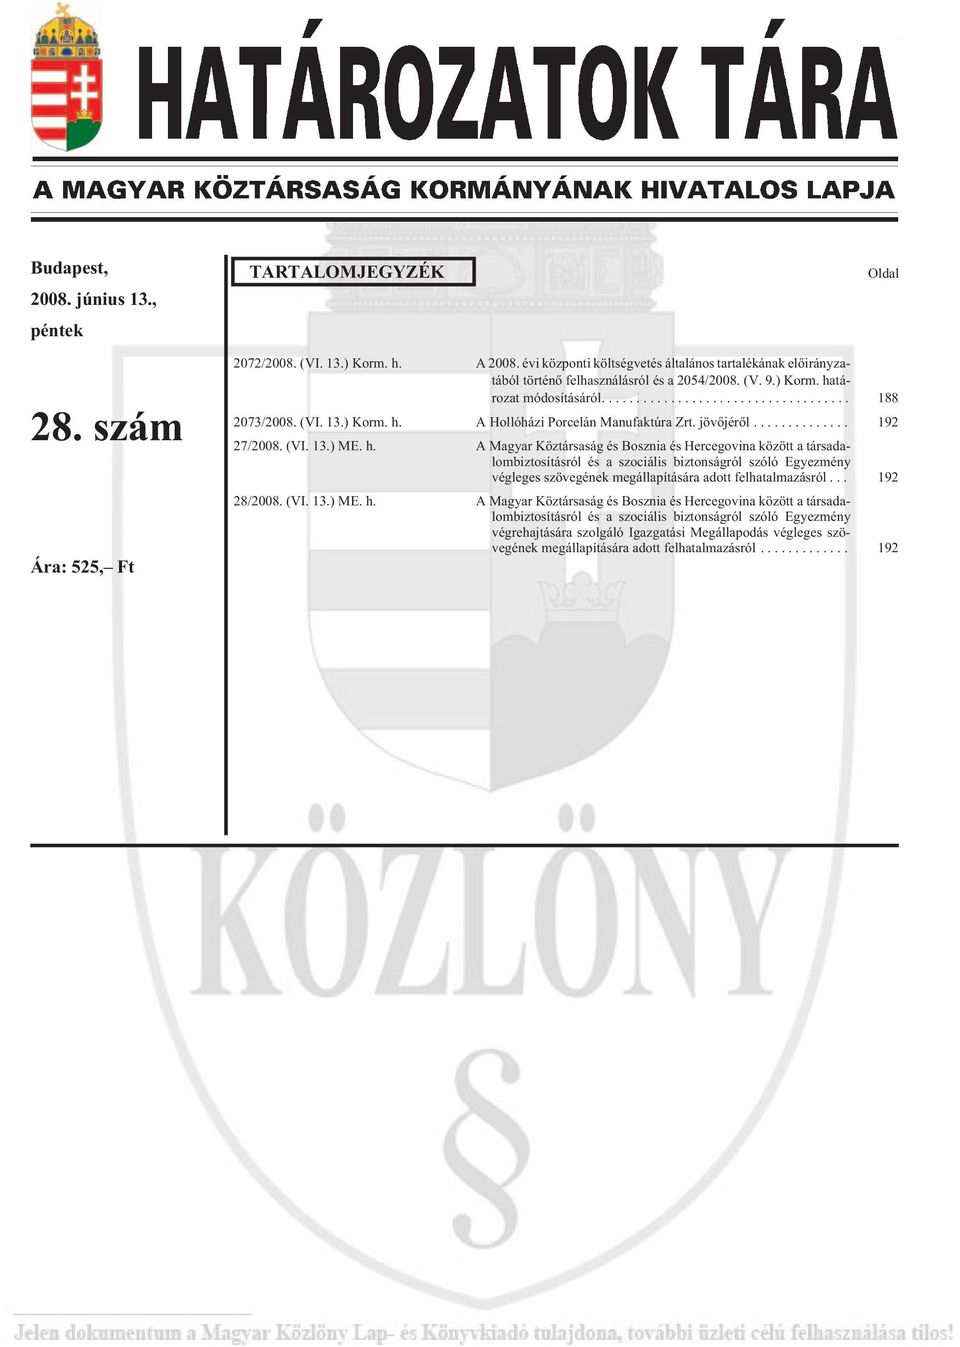 A Hollóházi Porcelán Manufaktúra Zrt. jövõjérõl... 192 27/2008. (VI. 13.) ME. h.